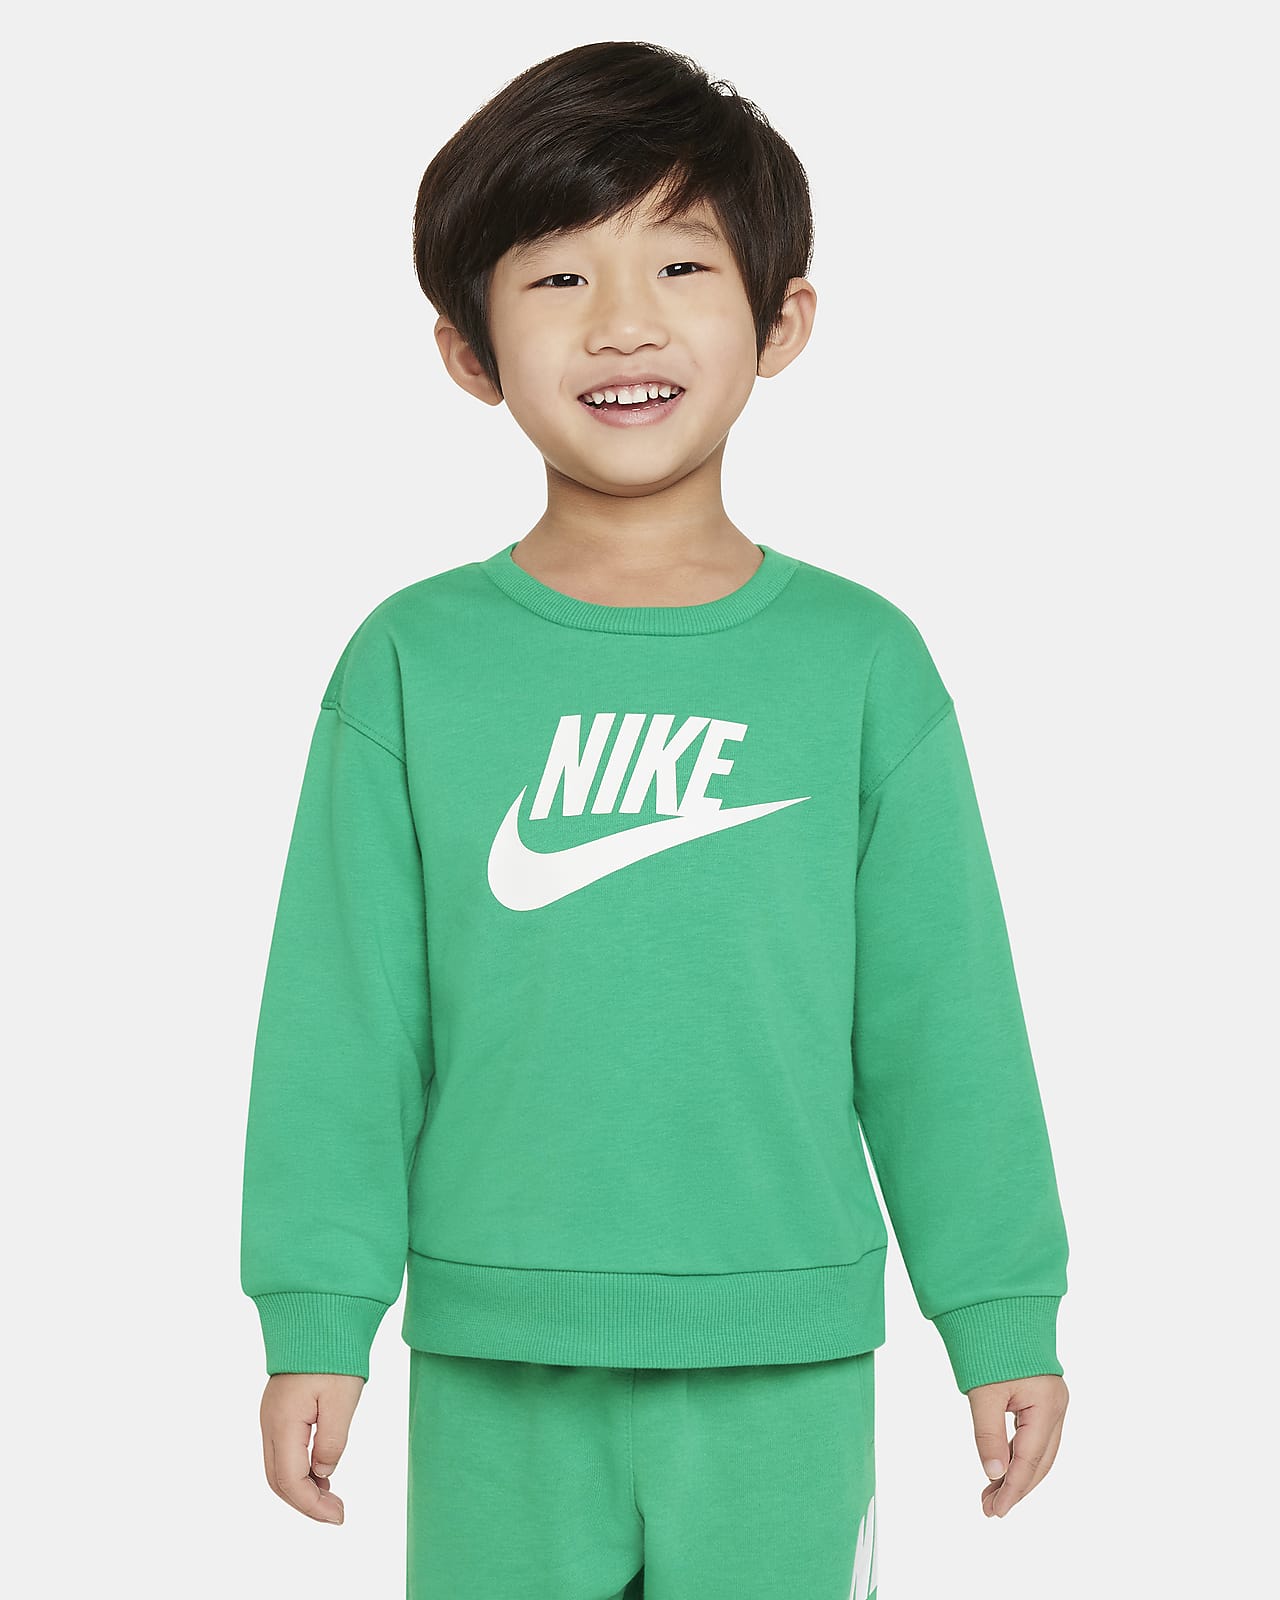 Nike 婴童法式毛圈圆领上衣